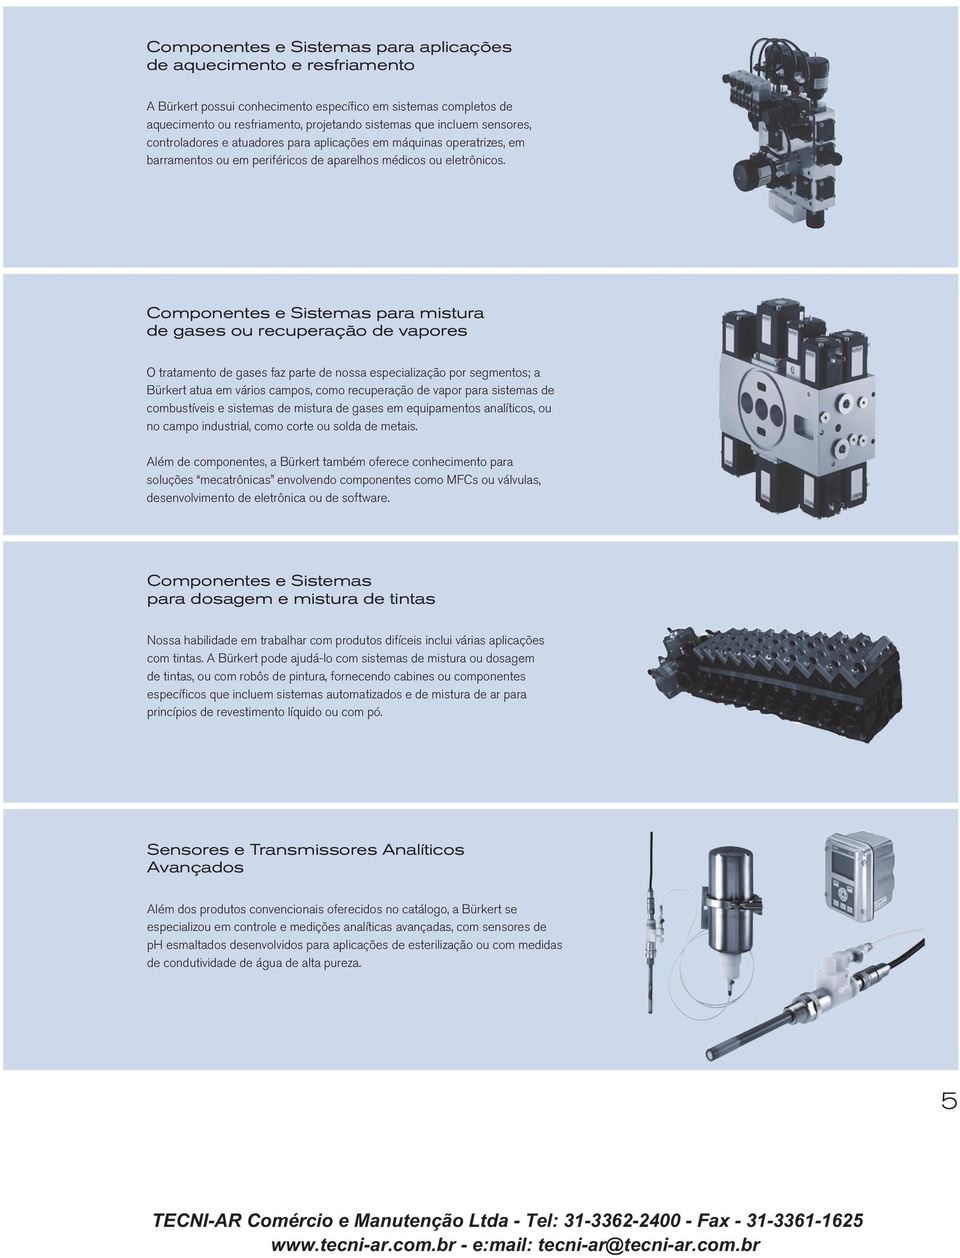 Componentes e Sistemas para mistura de gases ou recuperação de vapores O tratamento de gases faz parte de nossa especialização por segmentos; a Bürkert atua em vários campos, como recuperação de